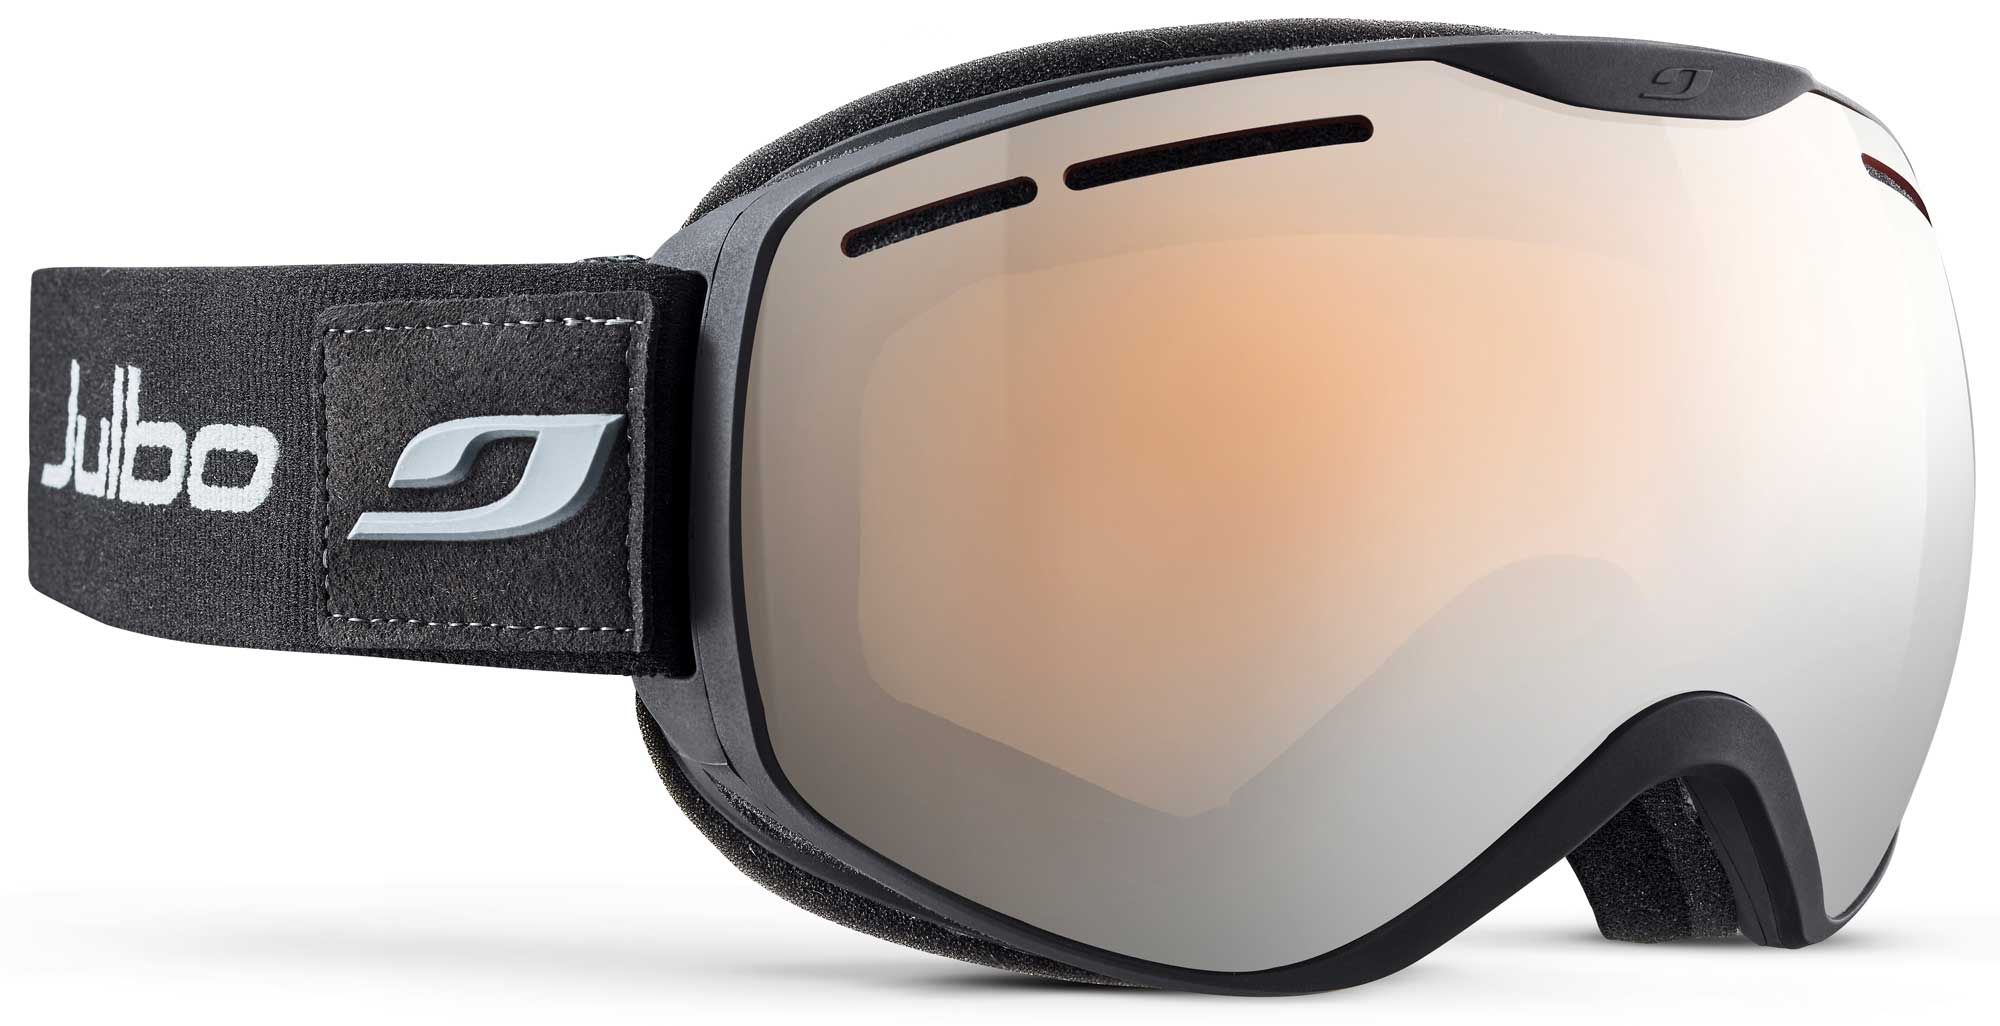 Unisex  lyžiarske okuliare